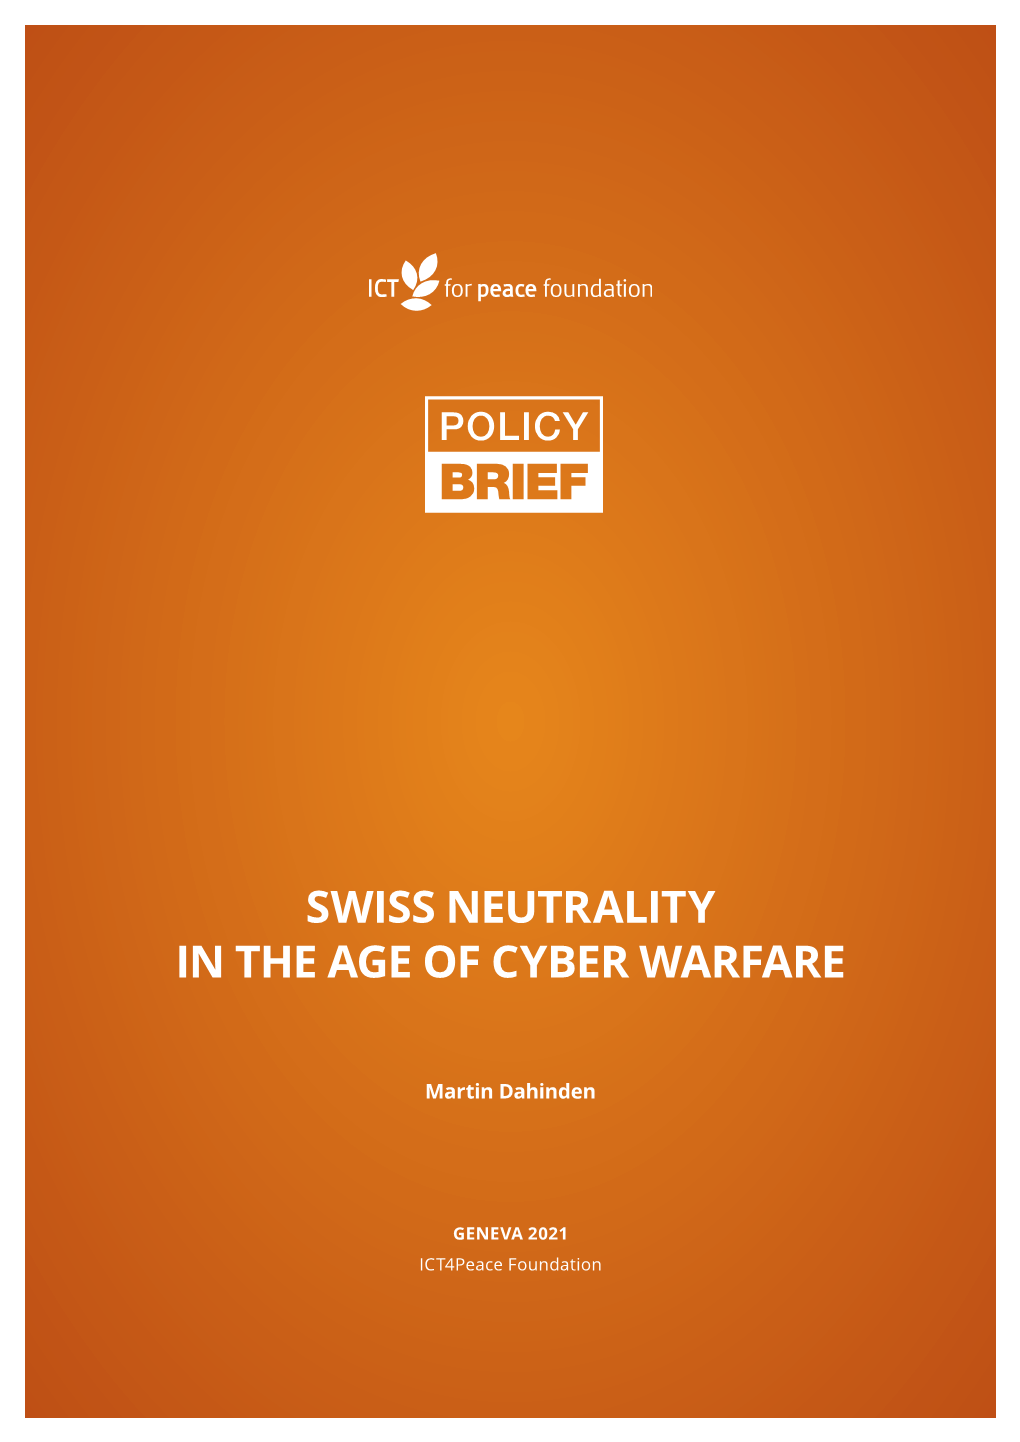 Swiss Neutrality in the Age of Cyber Warfare